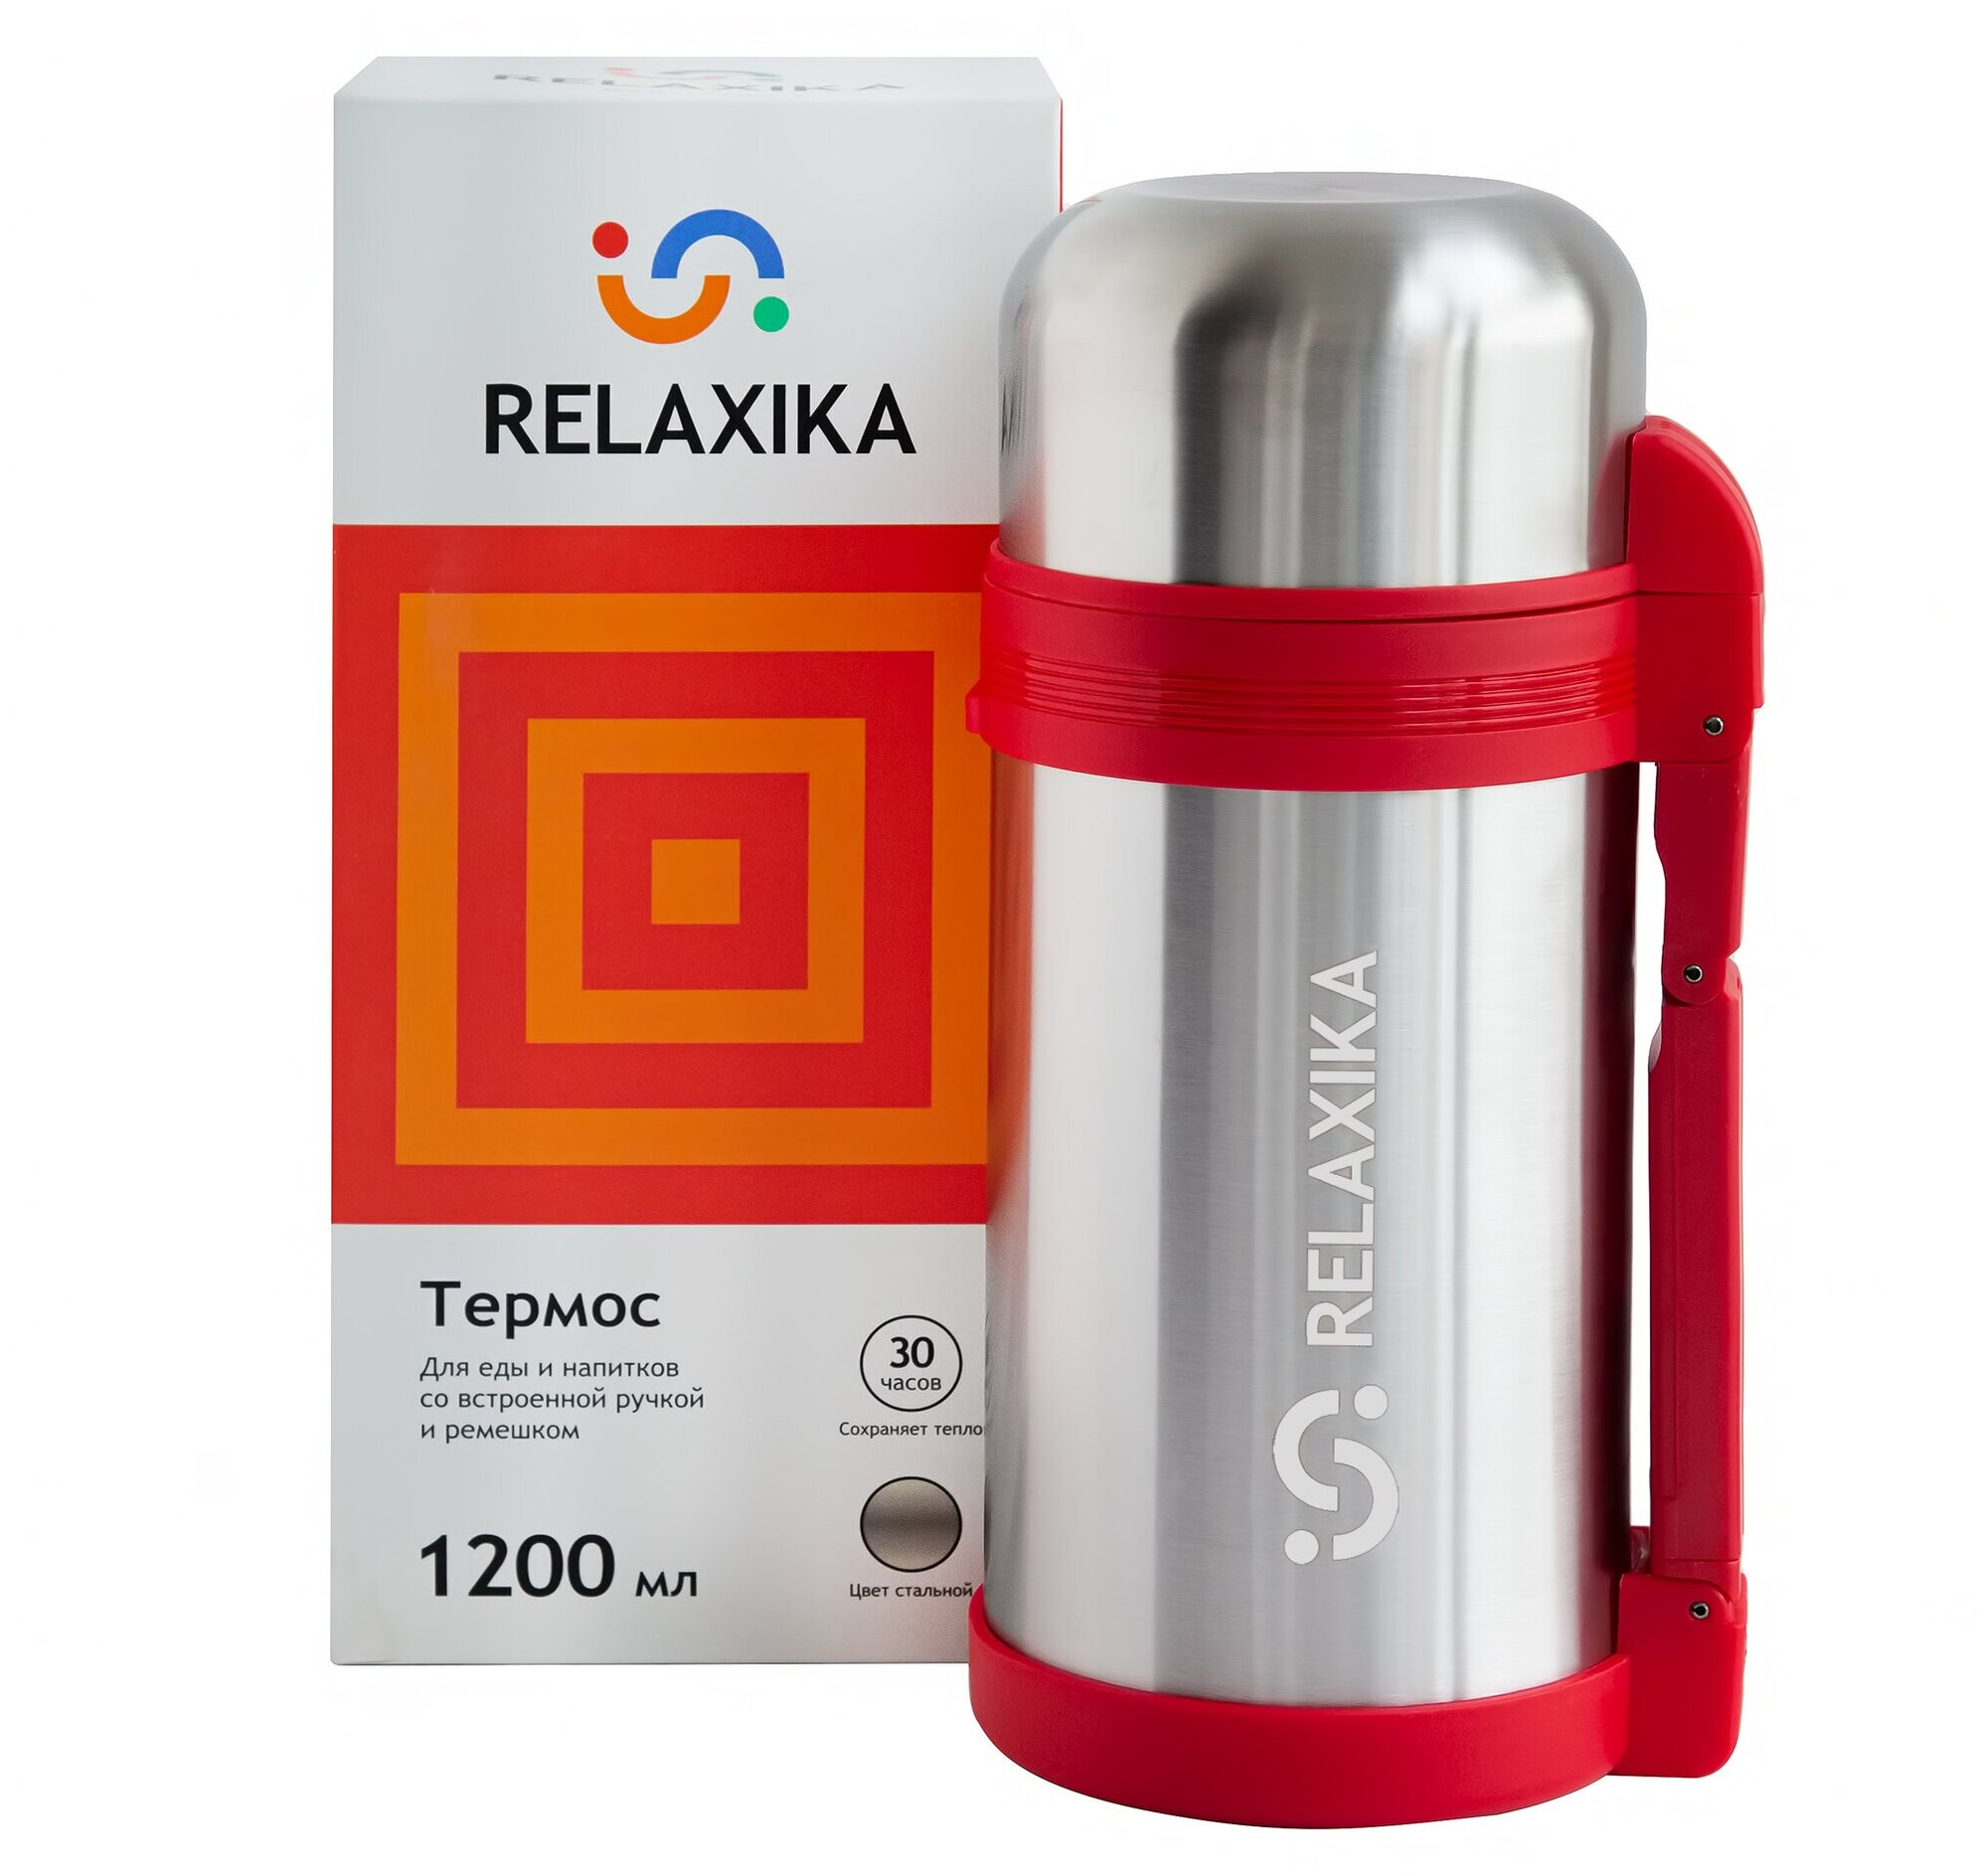 Relaxika термос универсальный (для еды и напитков) 201 (12 литра) стальной